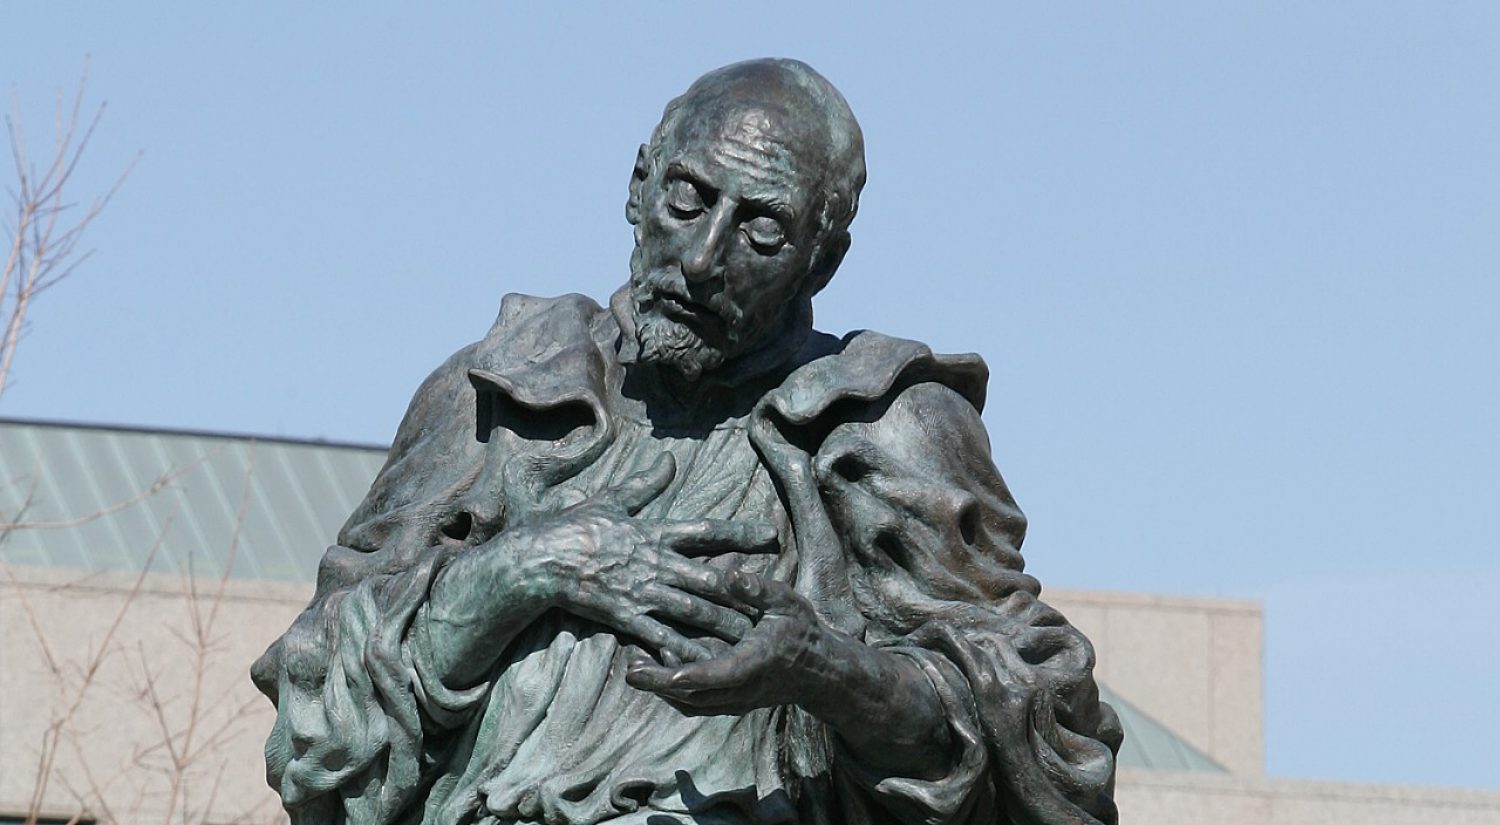 St. Ignatius Loyola statue at Boston College 